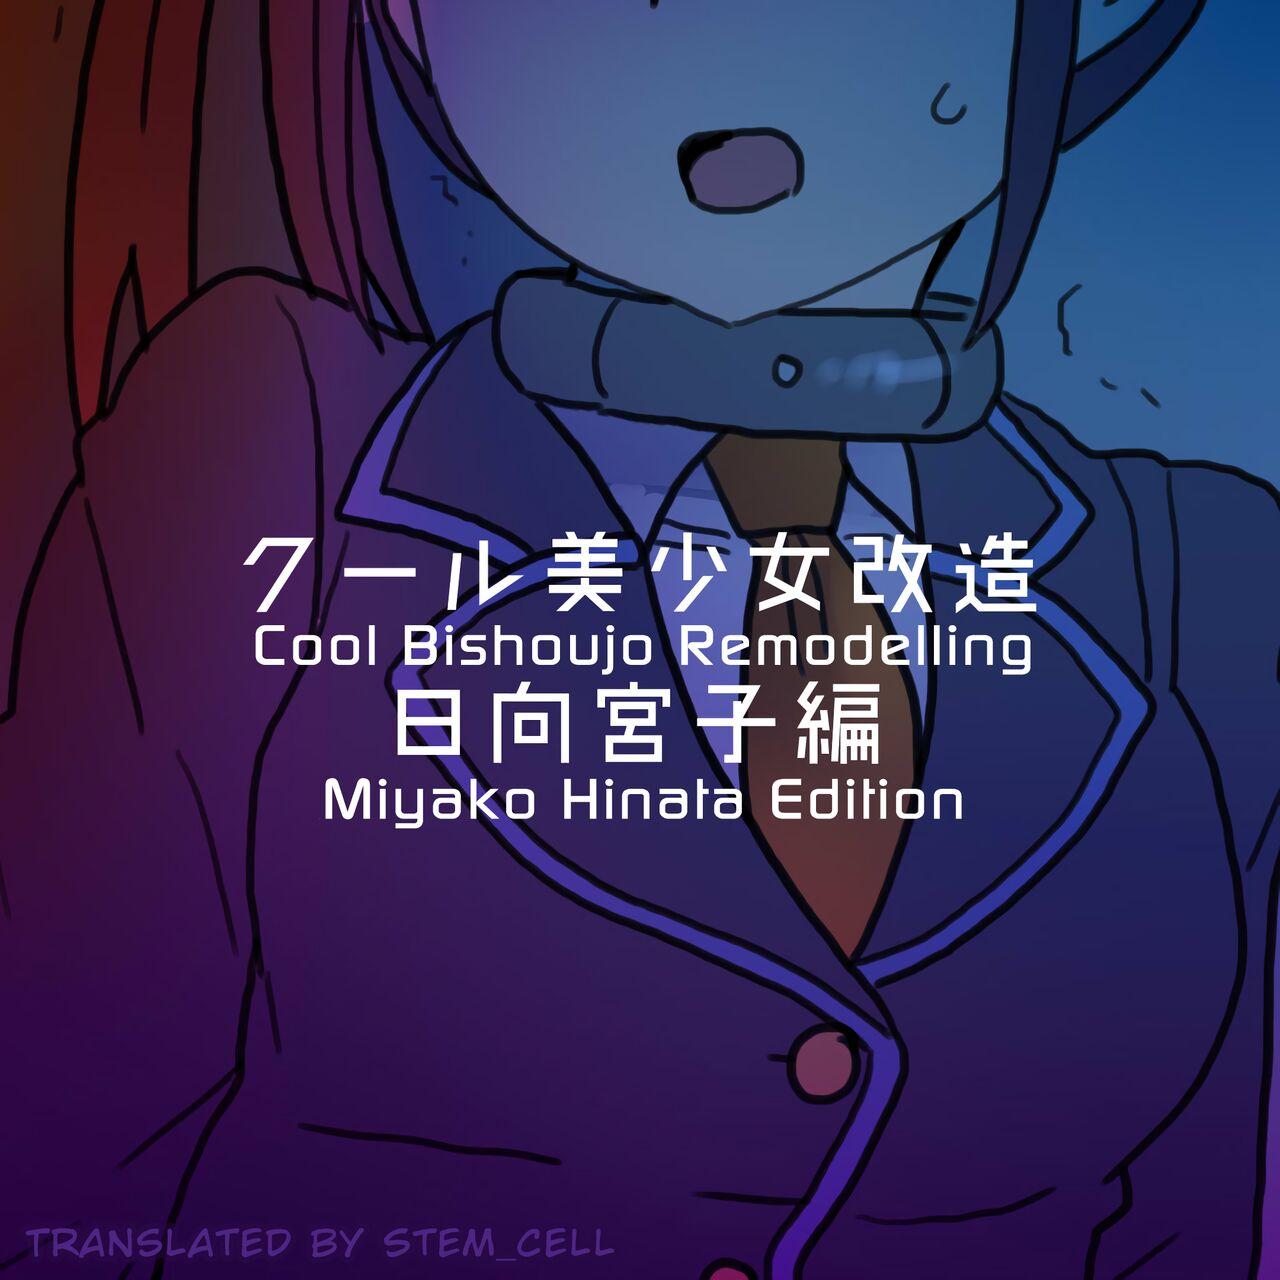 Cool Bishoujo Remodeling Ch19 - Miyako Hinata Edition 0